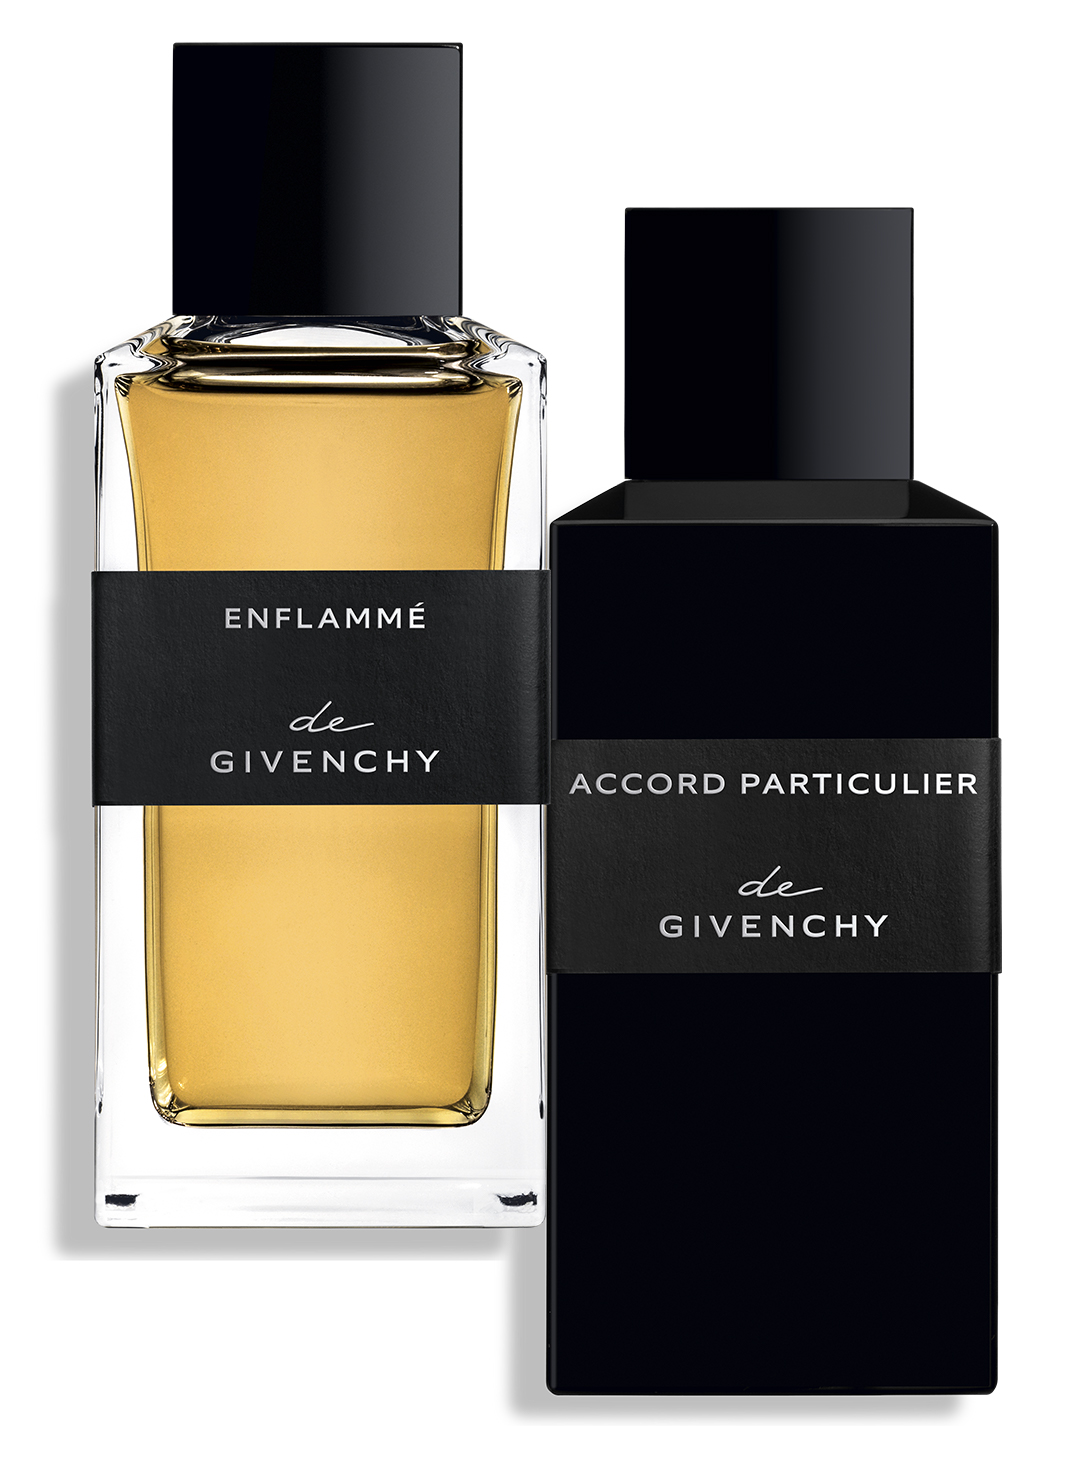 Enflammé Perfume La Collection Particulière | Givenchy Beauty